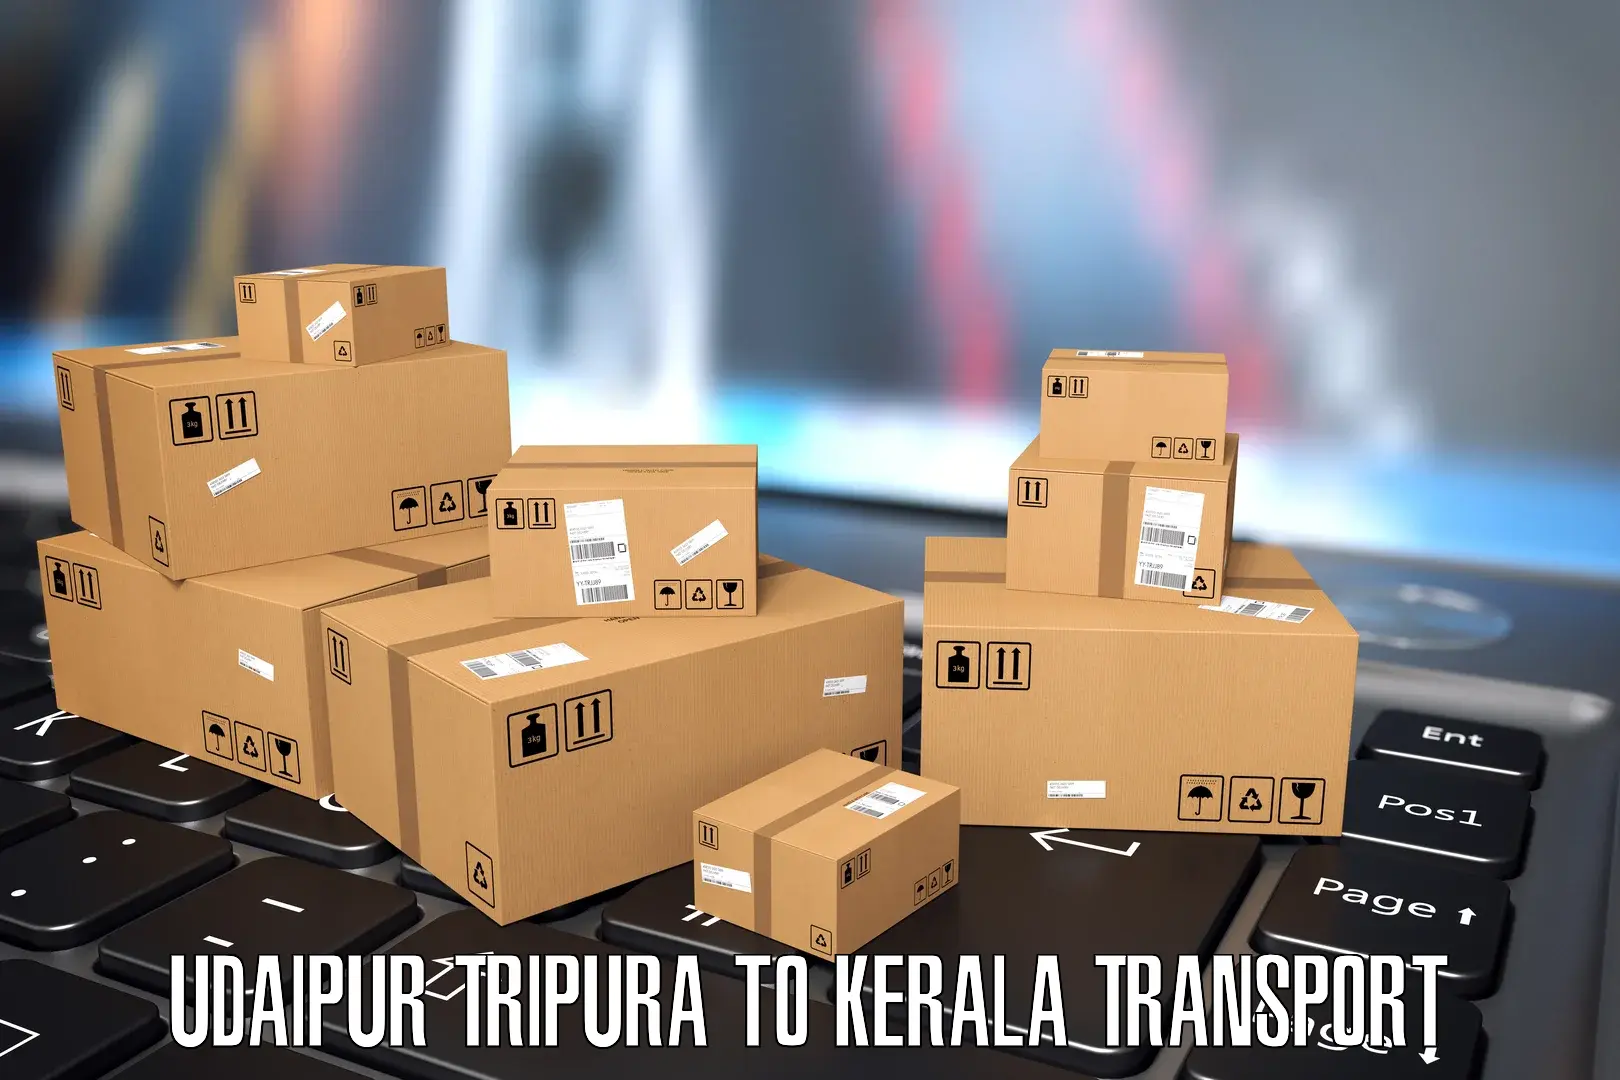 Nearest transport service Udaipur Tripura to Pazhayannur